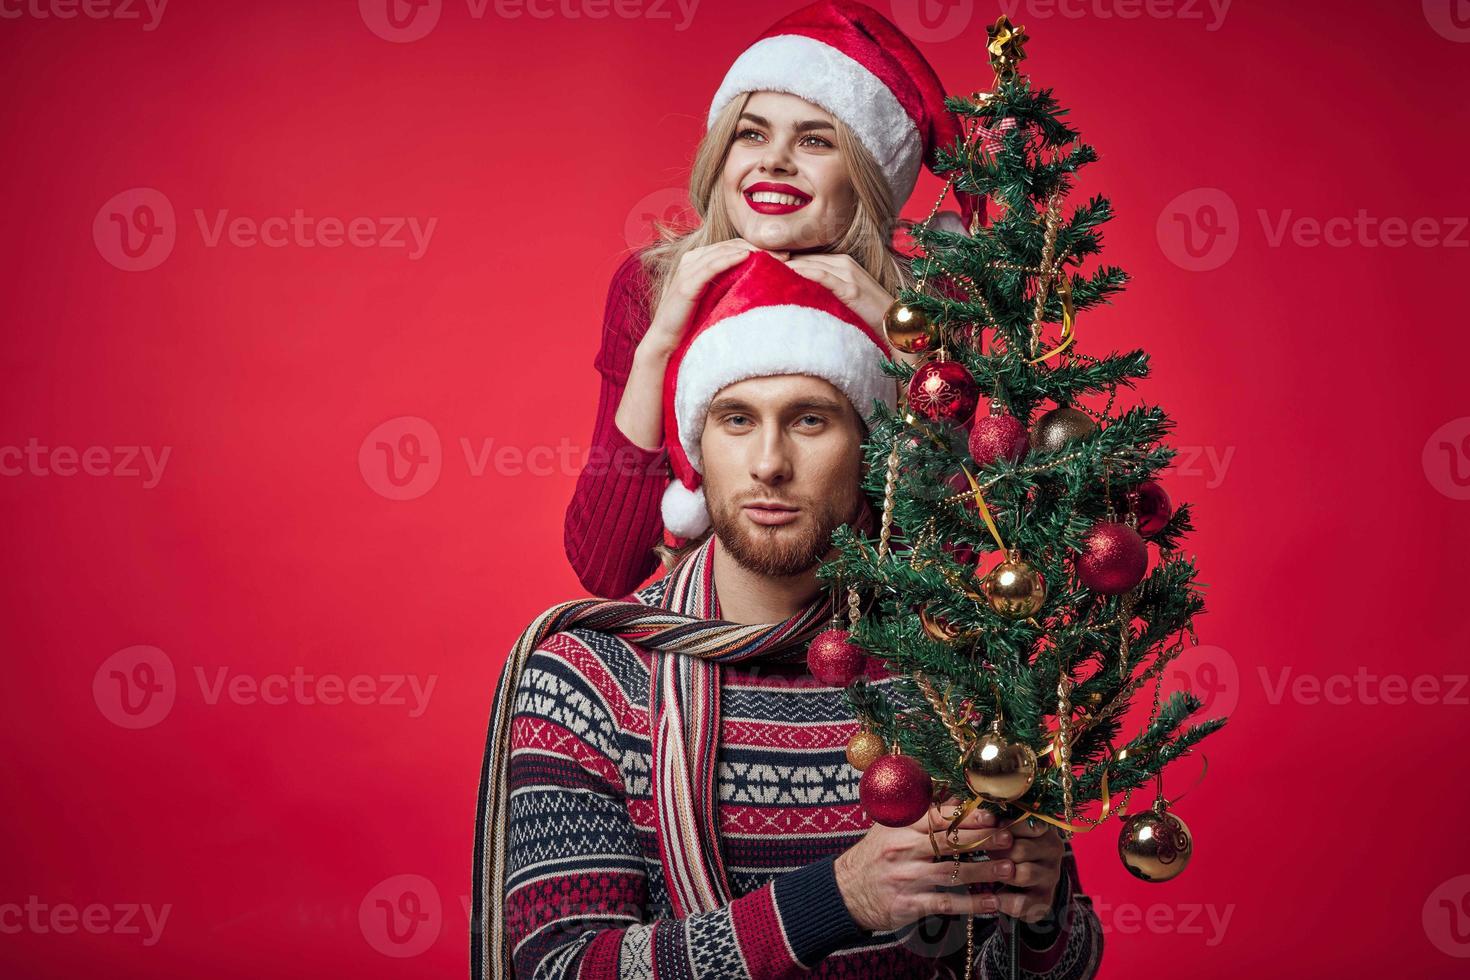 Mens en vrouw Kerstmis boom decoratie pret vakantie rood achtergrond foto